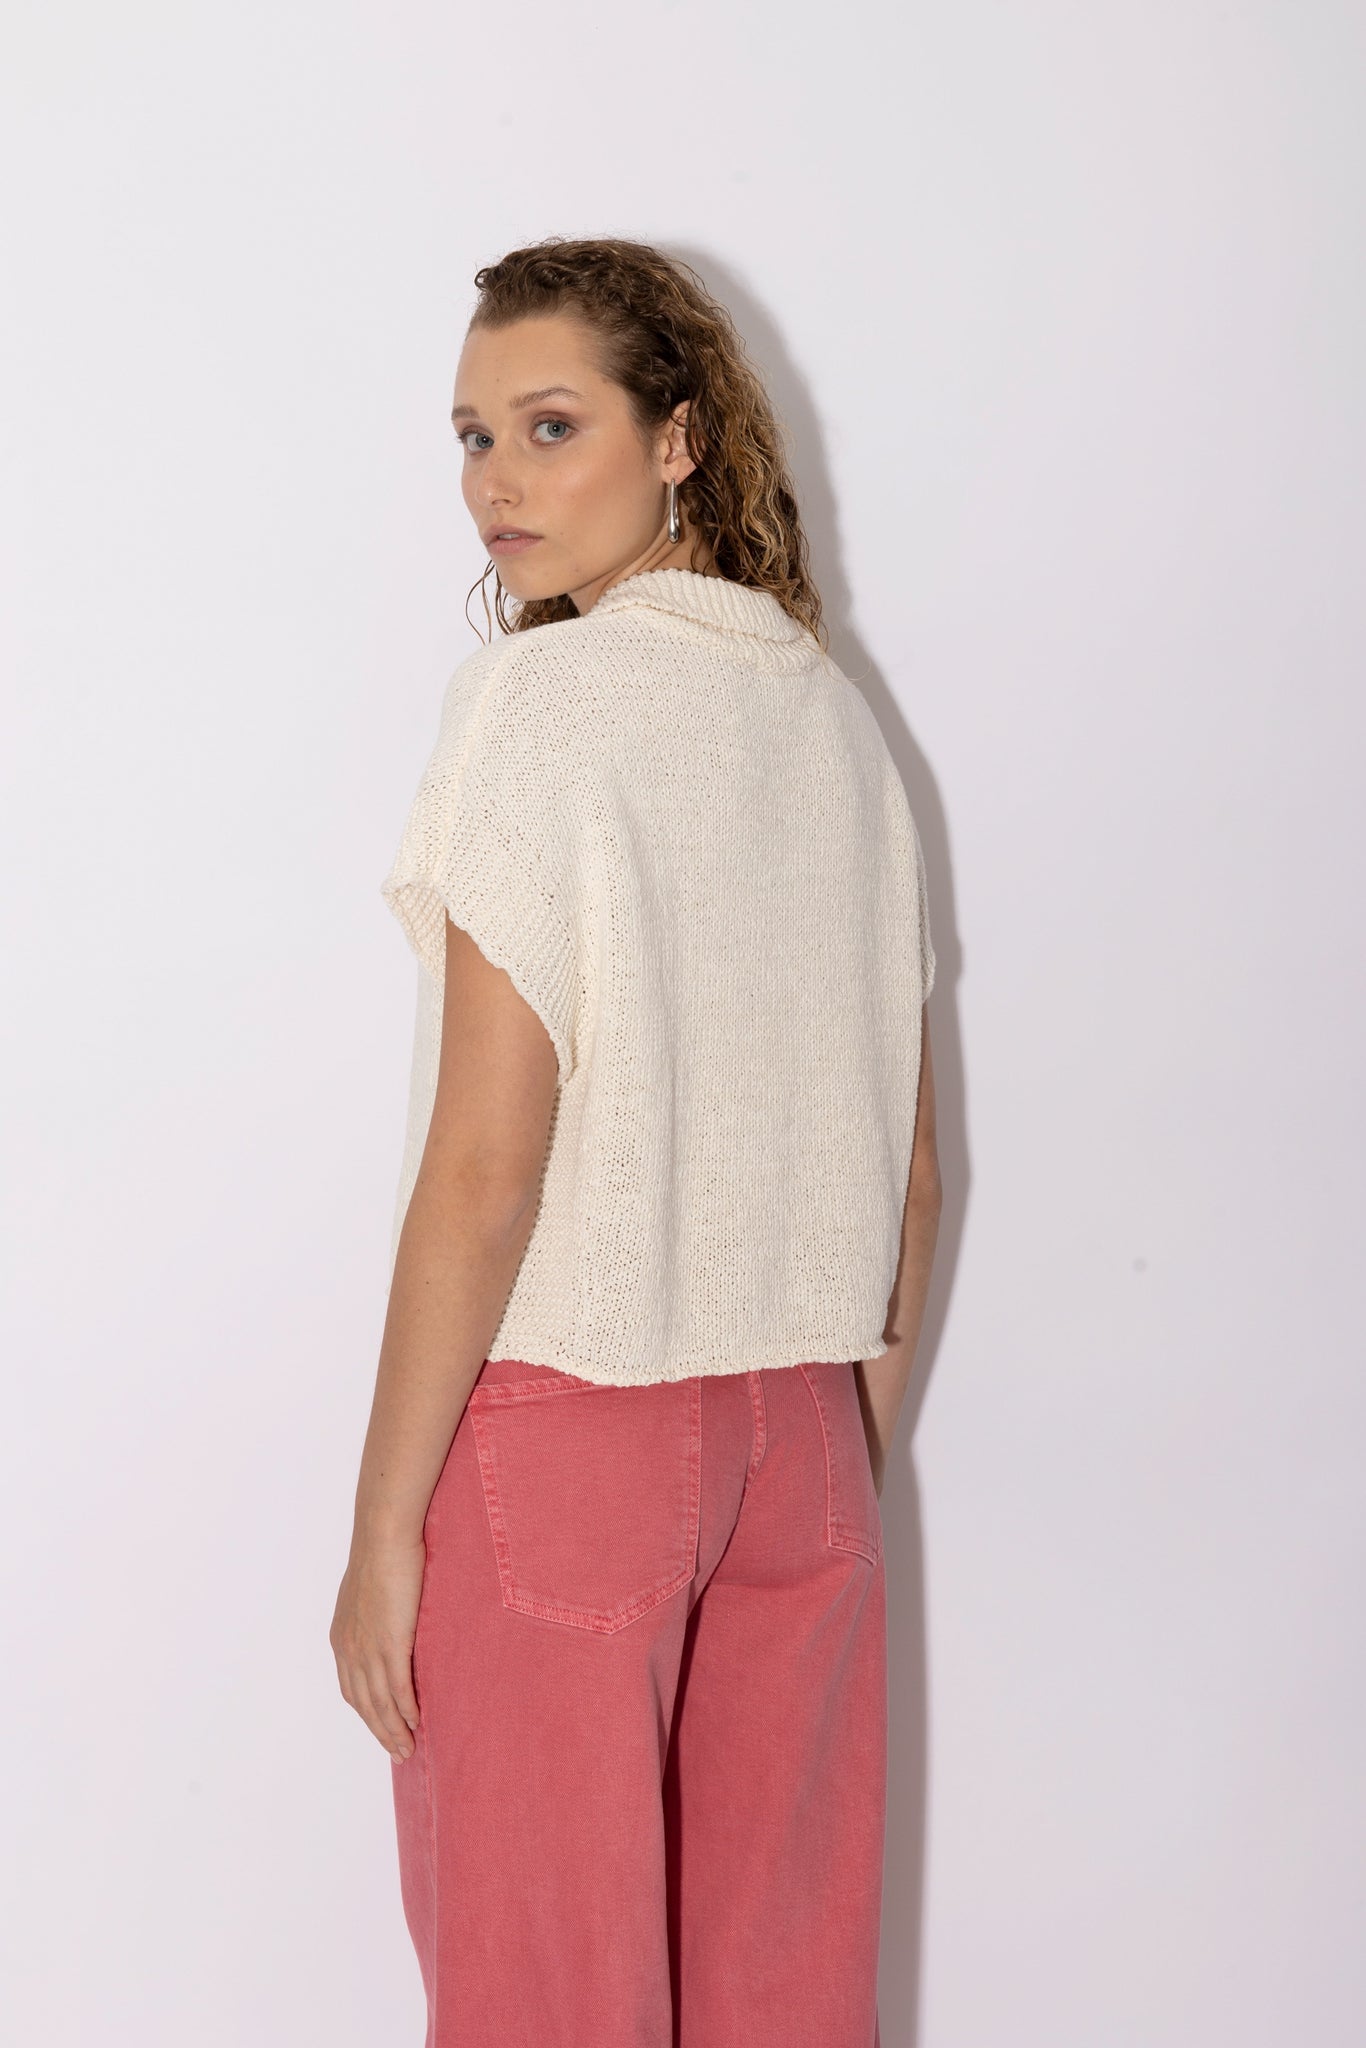 KOVAZ knitted top | ECRU